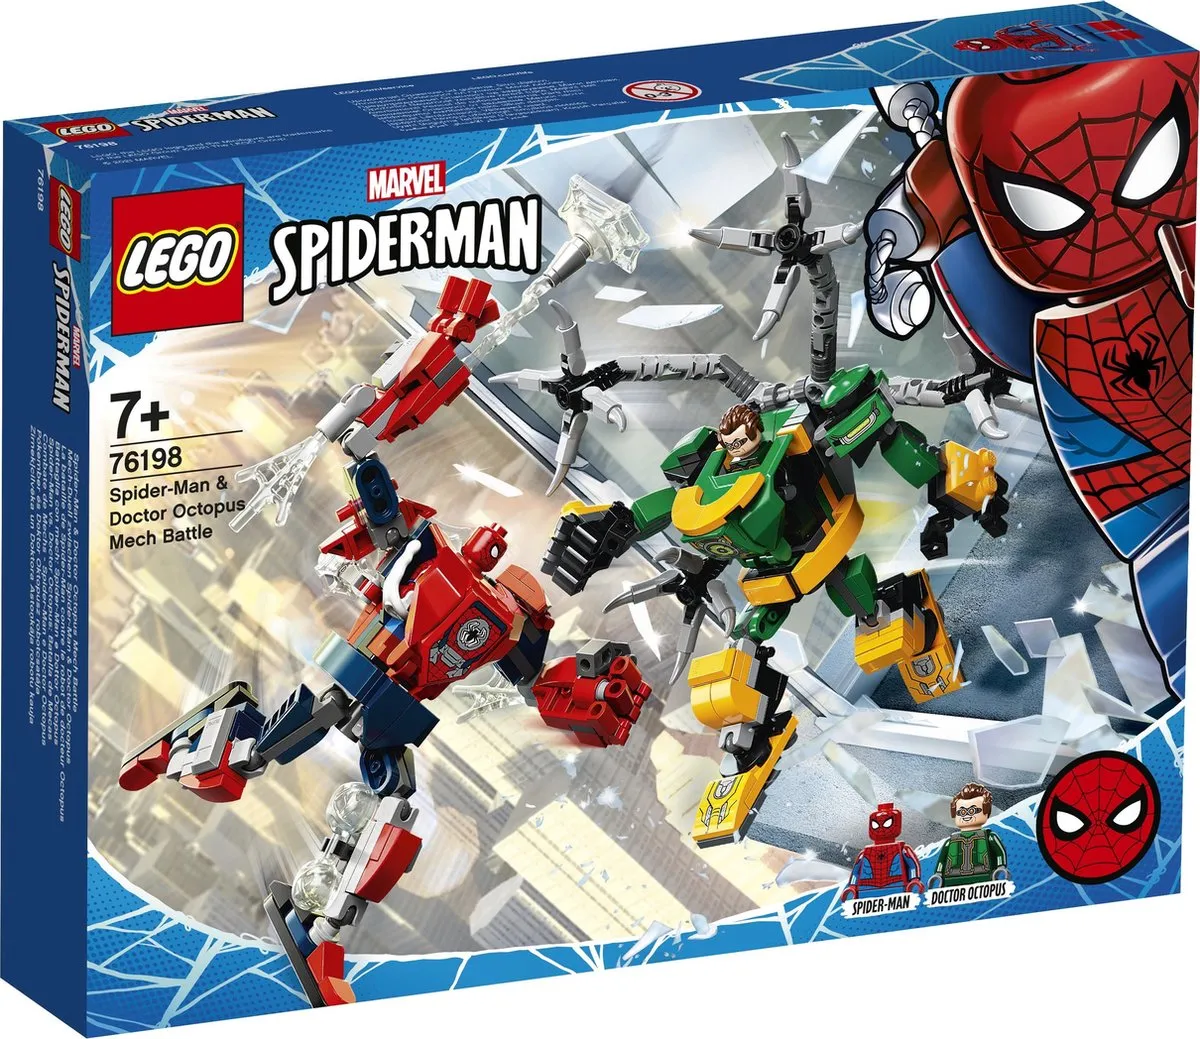 76198 LEGO Marvel Super Heroes Spider-Man & Doctor Octopus mechagevecht speelgoed